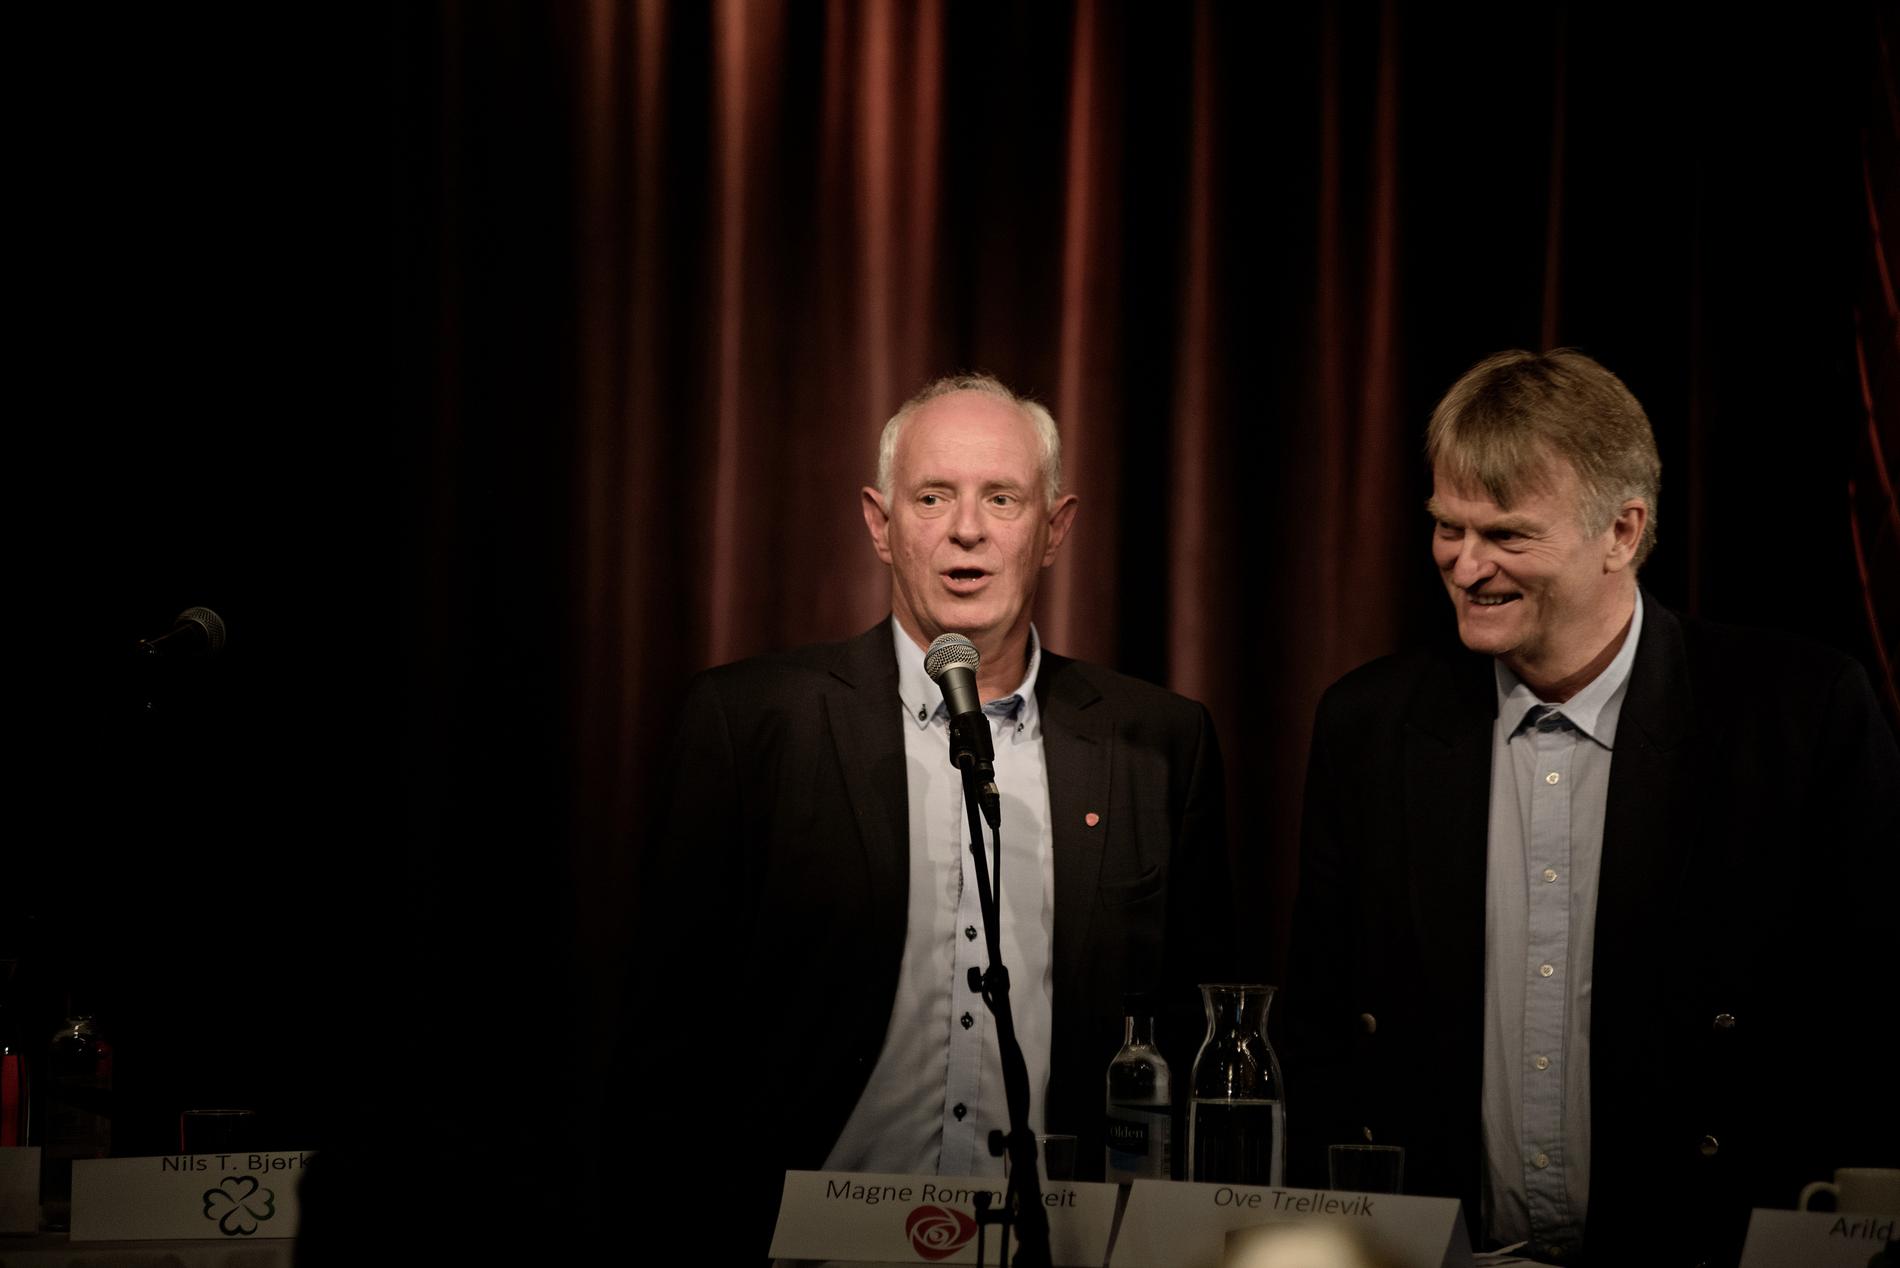 DUELL: Magne Rommetveit og Ap (til venstre) klarer ikke å få flere mandater på BTs hordalandsmåling. Høyres Ove Trellevik er fornøyd med å gjenta resultatet fra 2013. Fredag møttes de to til duell om næringspolitikk i Ole Bull Teater.